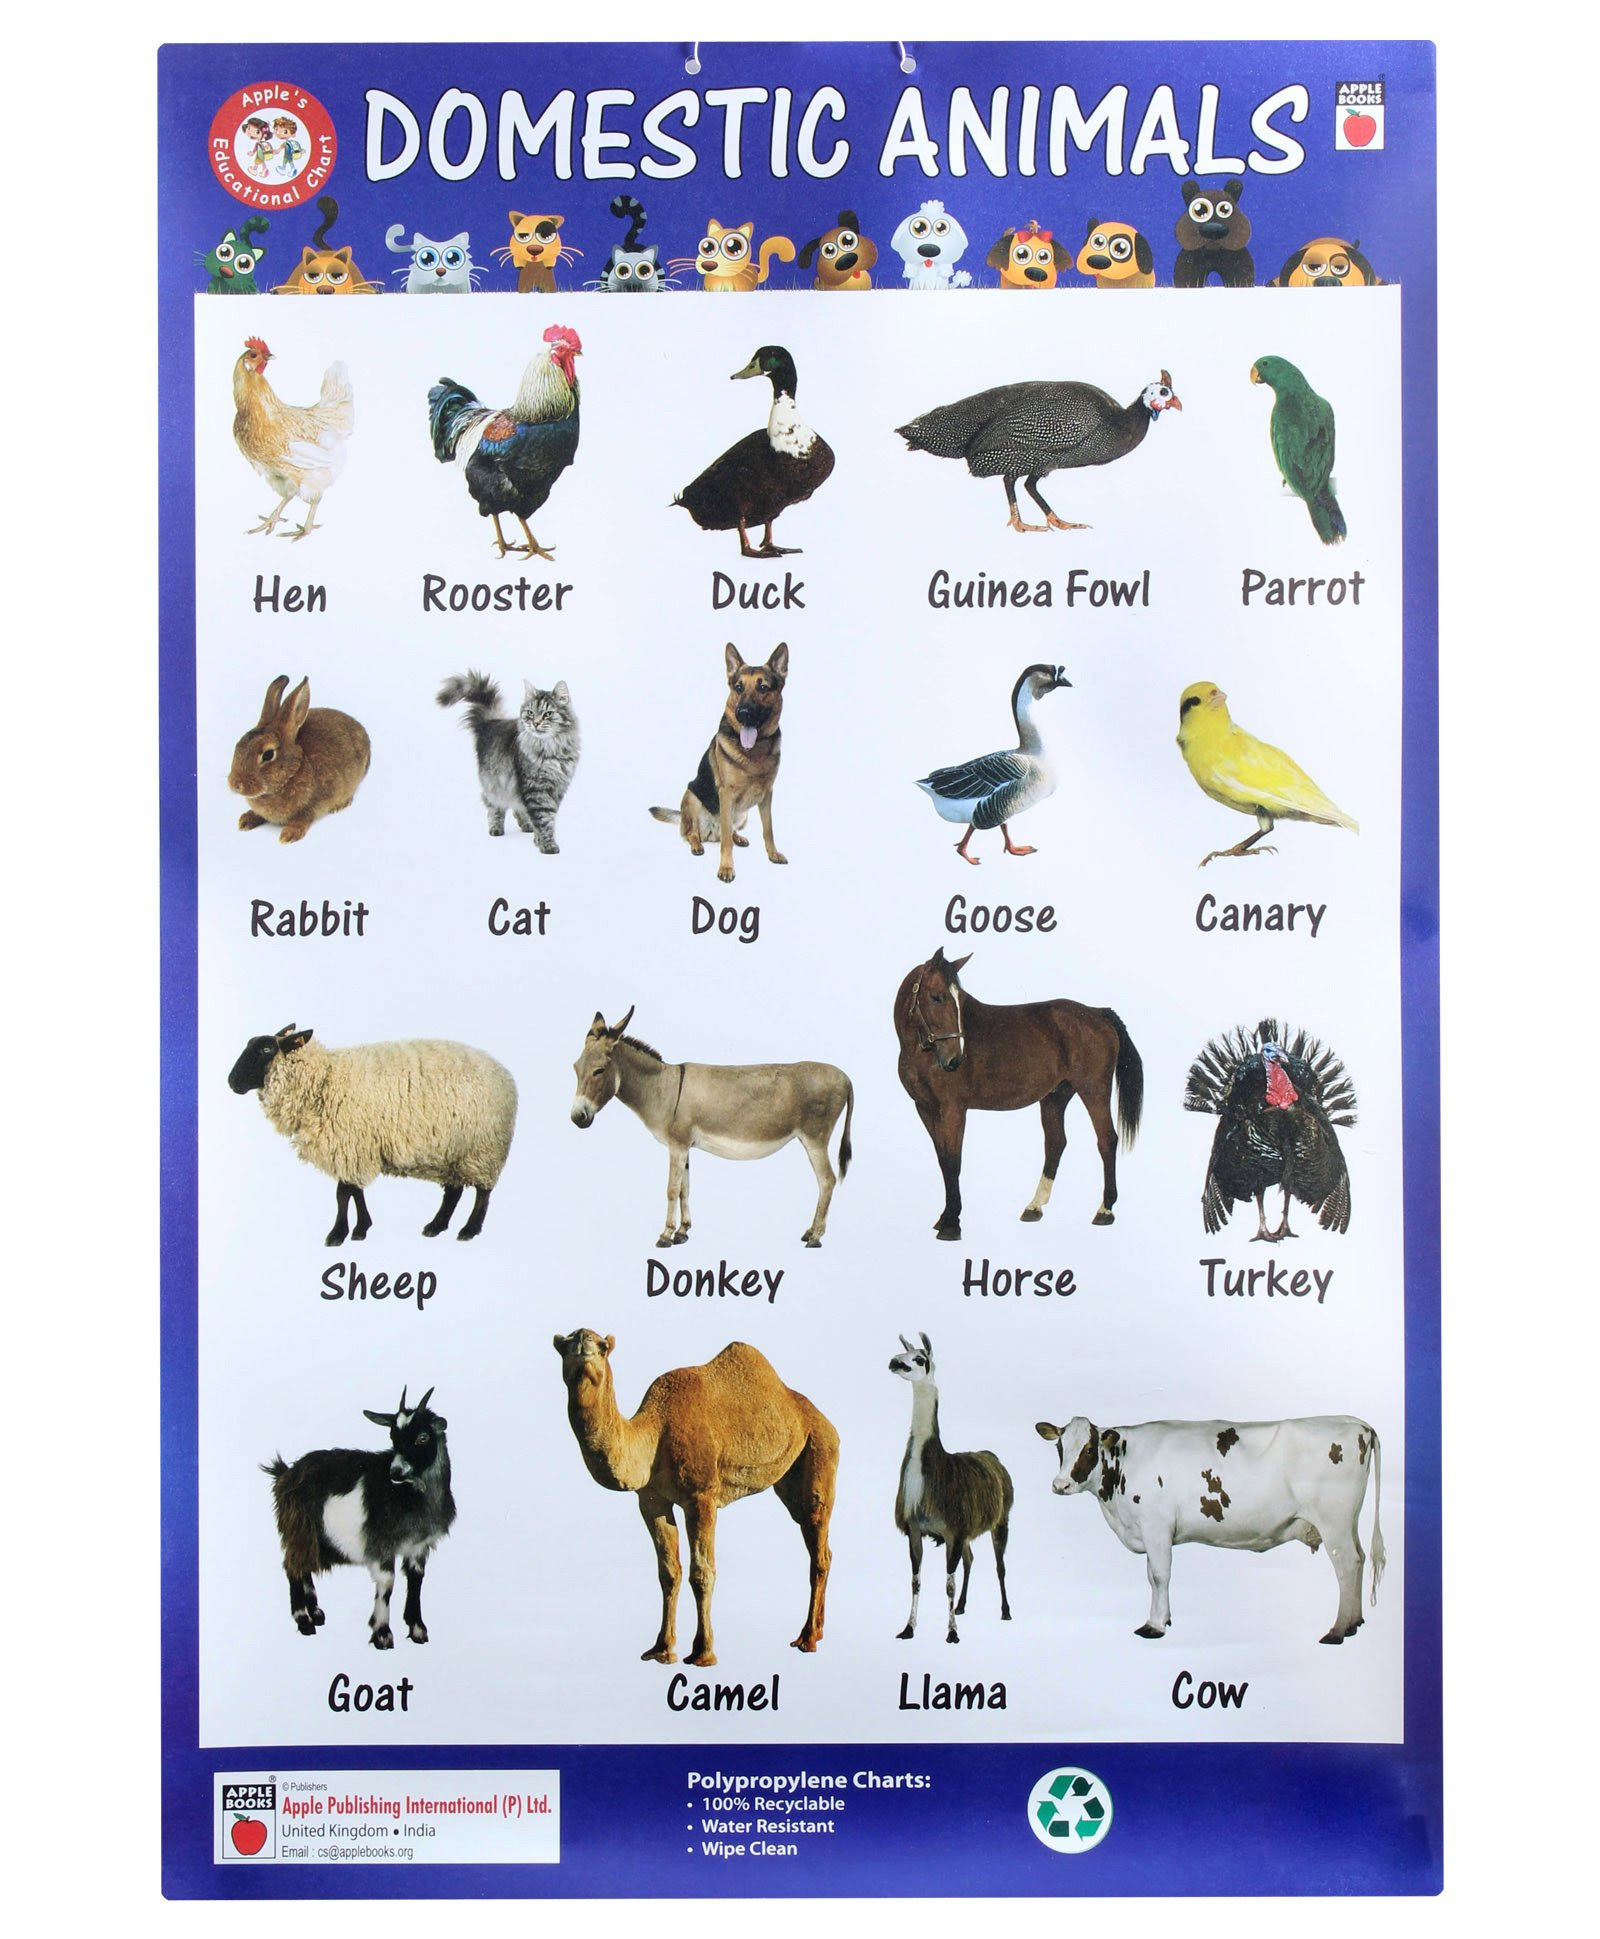 Wild animals тема. Домашние животные на английском. Животный на английском языке. Названия животных на англ. Названия домашних животных на английском языке.